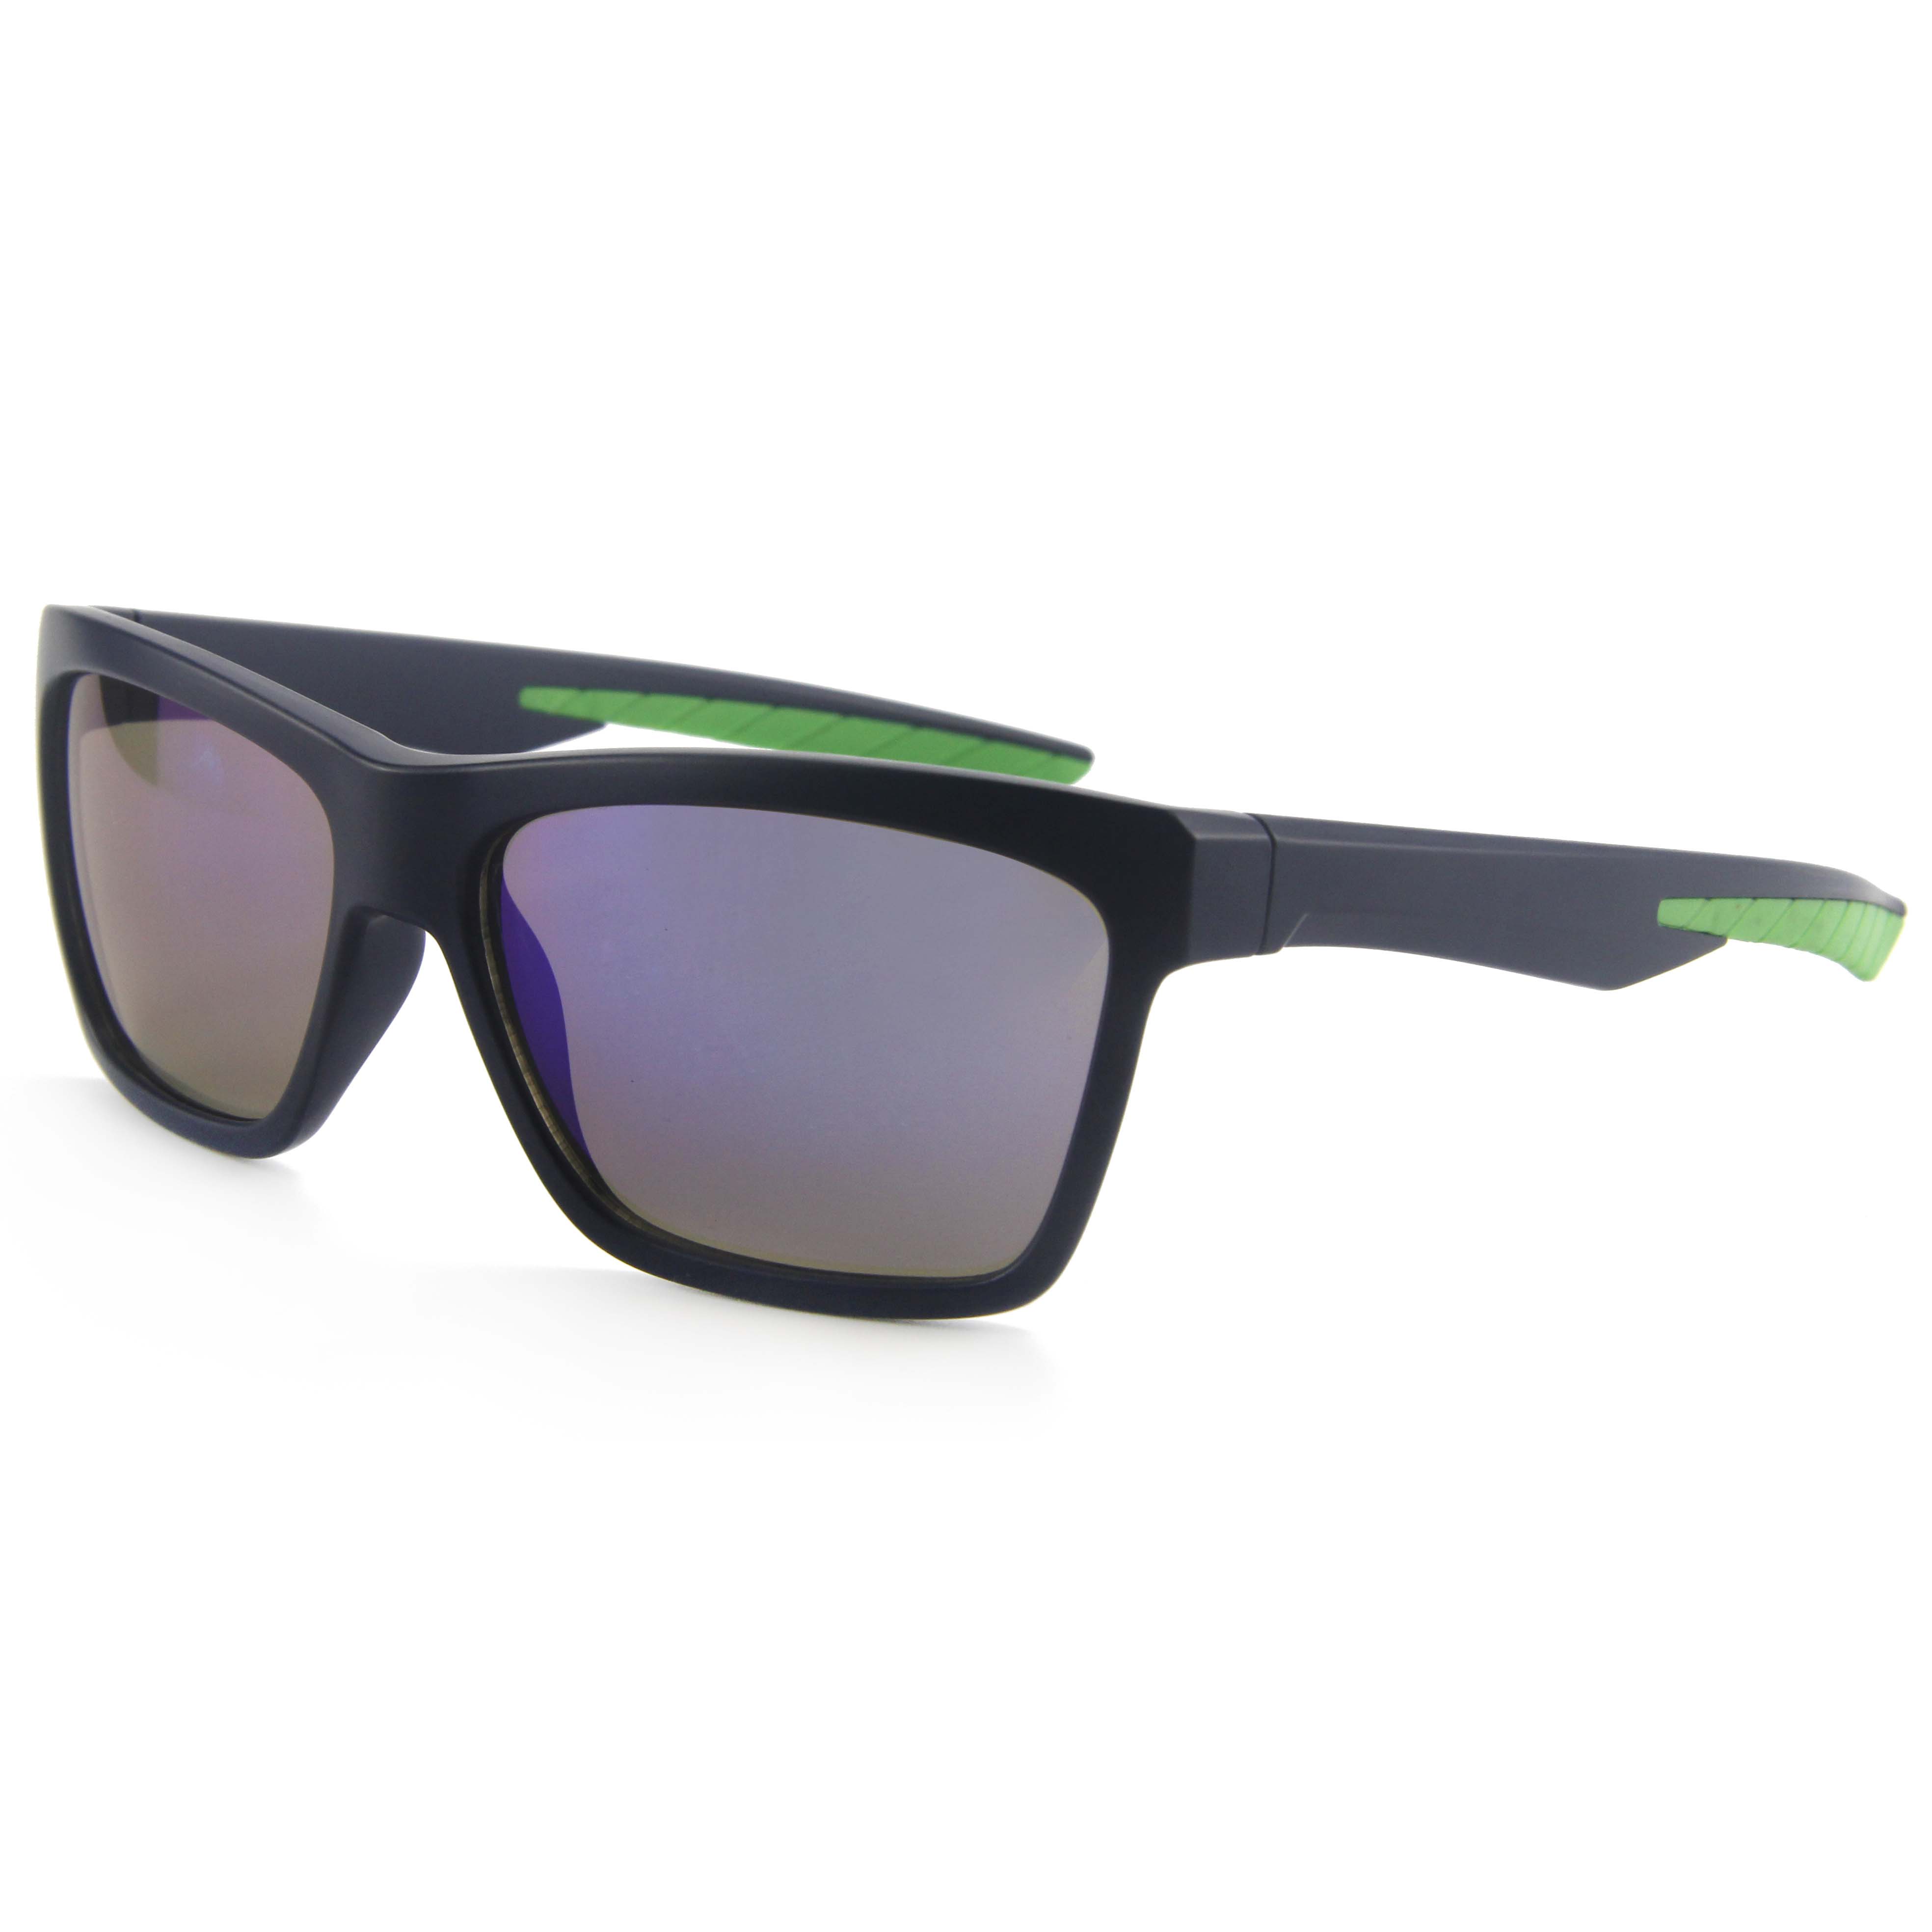 EUGENIA-gafas de sol deportivas para hombre, lentes de sol deportivas con forma cuadrada, marco de PC, decoración verde, logotipo personalizado, nuevo diseño, 2021